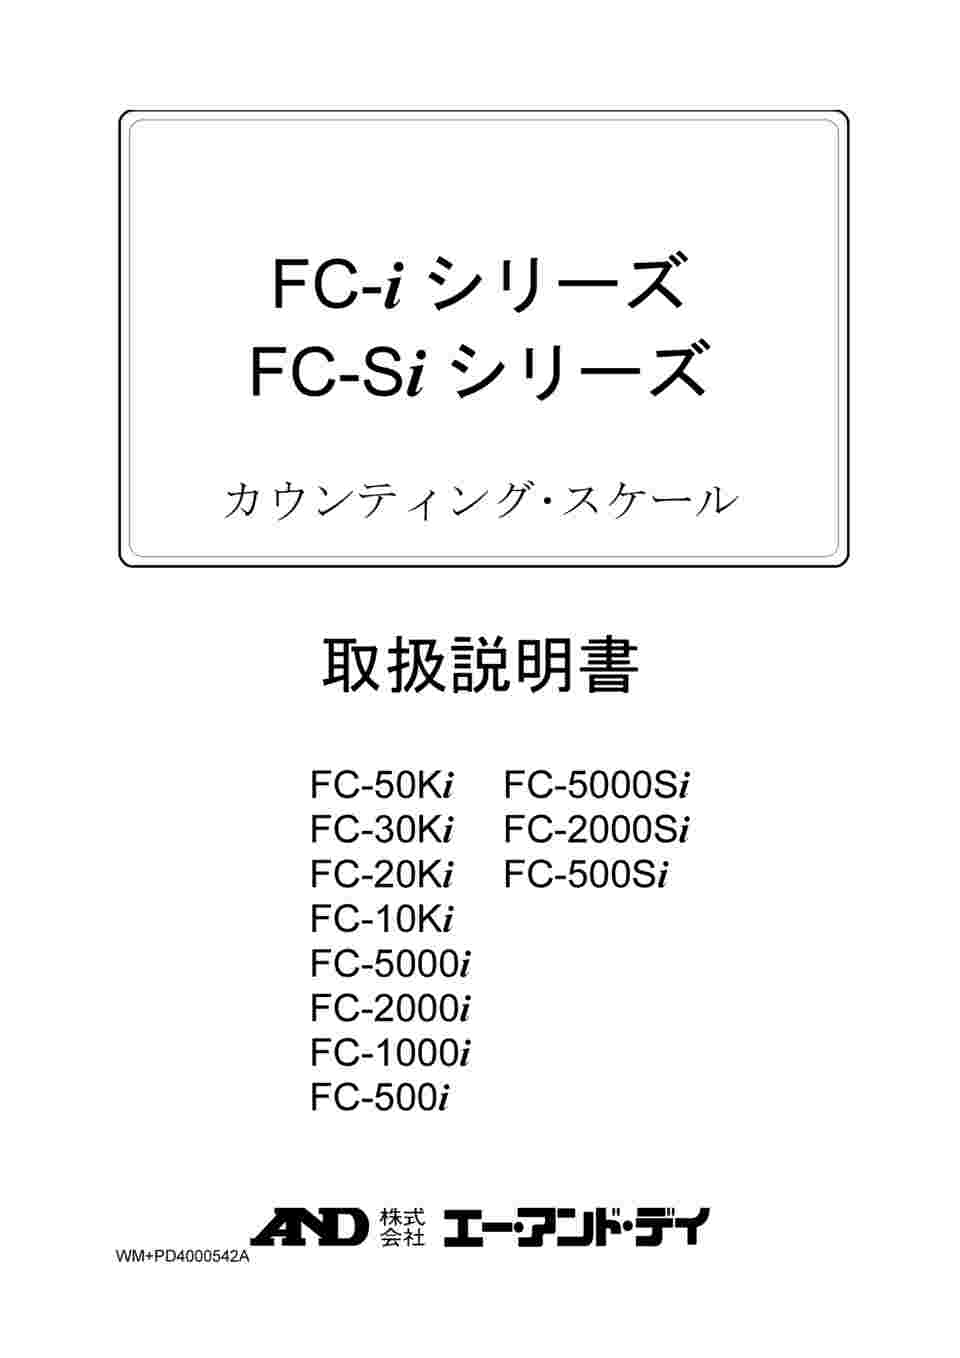 A&D 個数計 FC-1000i ひょう量:1kg 最小表示:0.1g(計量可能最小単重